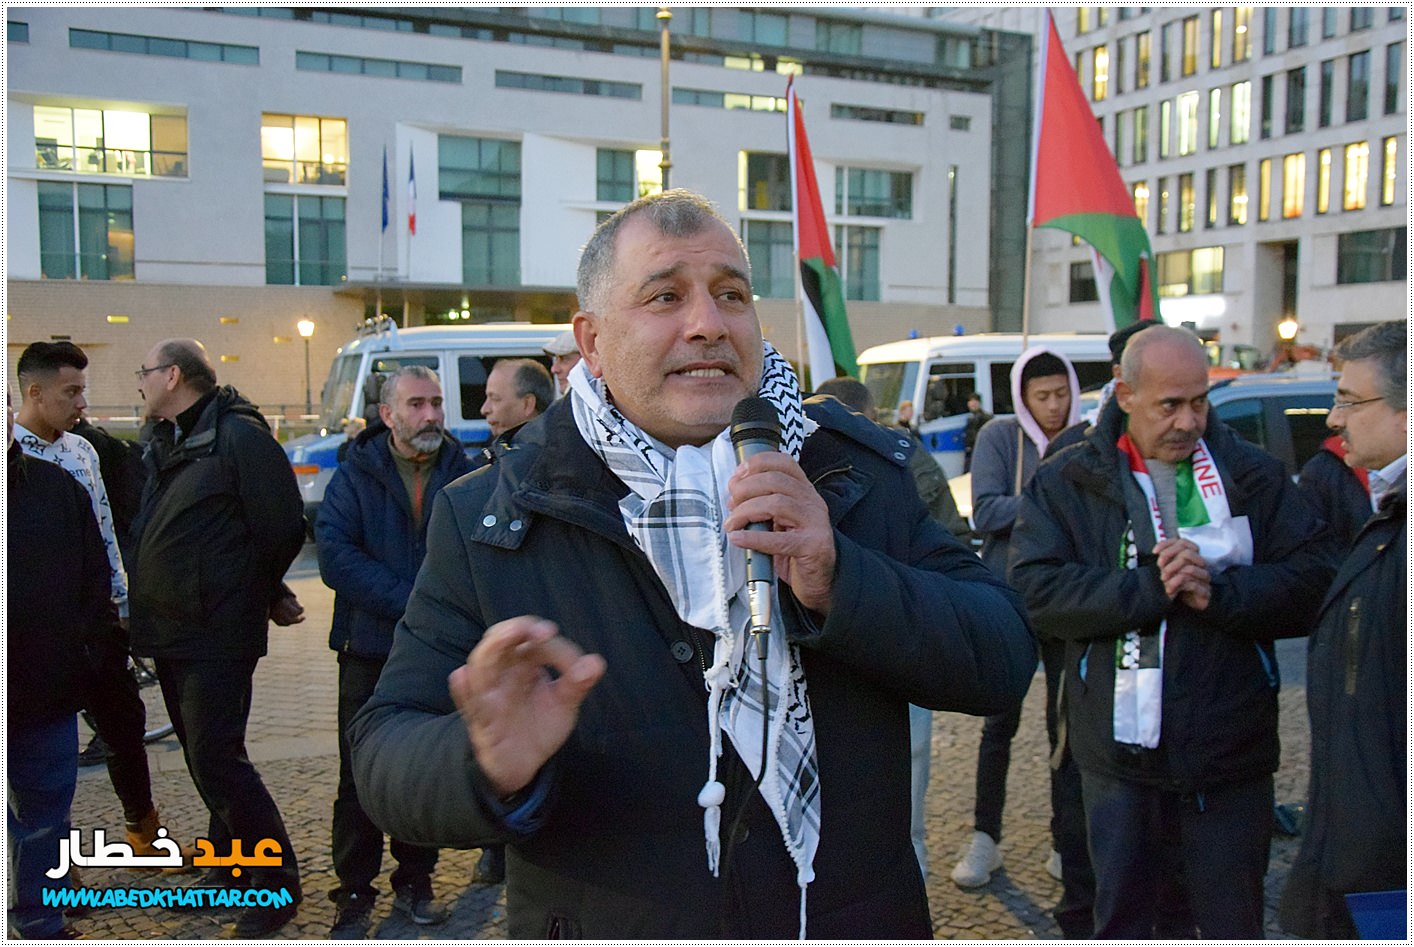 ماجد الزير رئيس مؤتمر فلسطينيي أوروبا - كلمة بالانكليزية